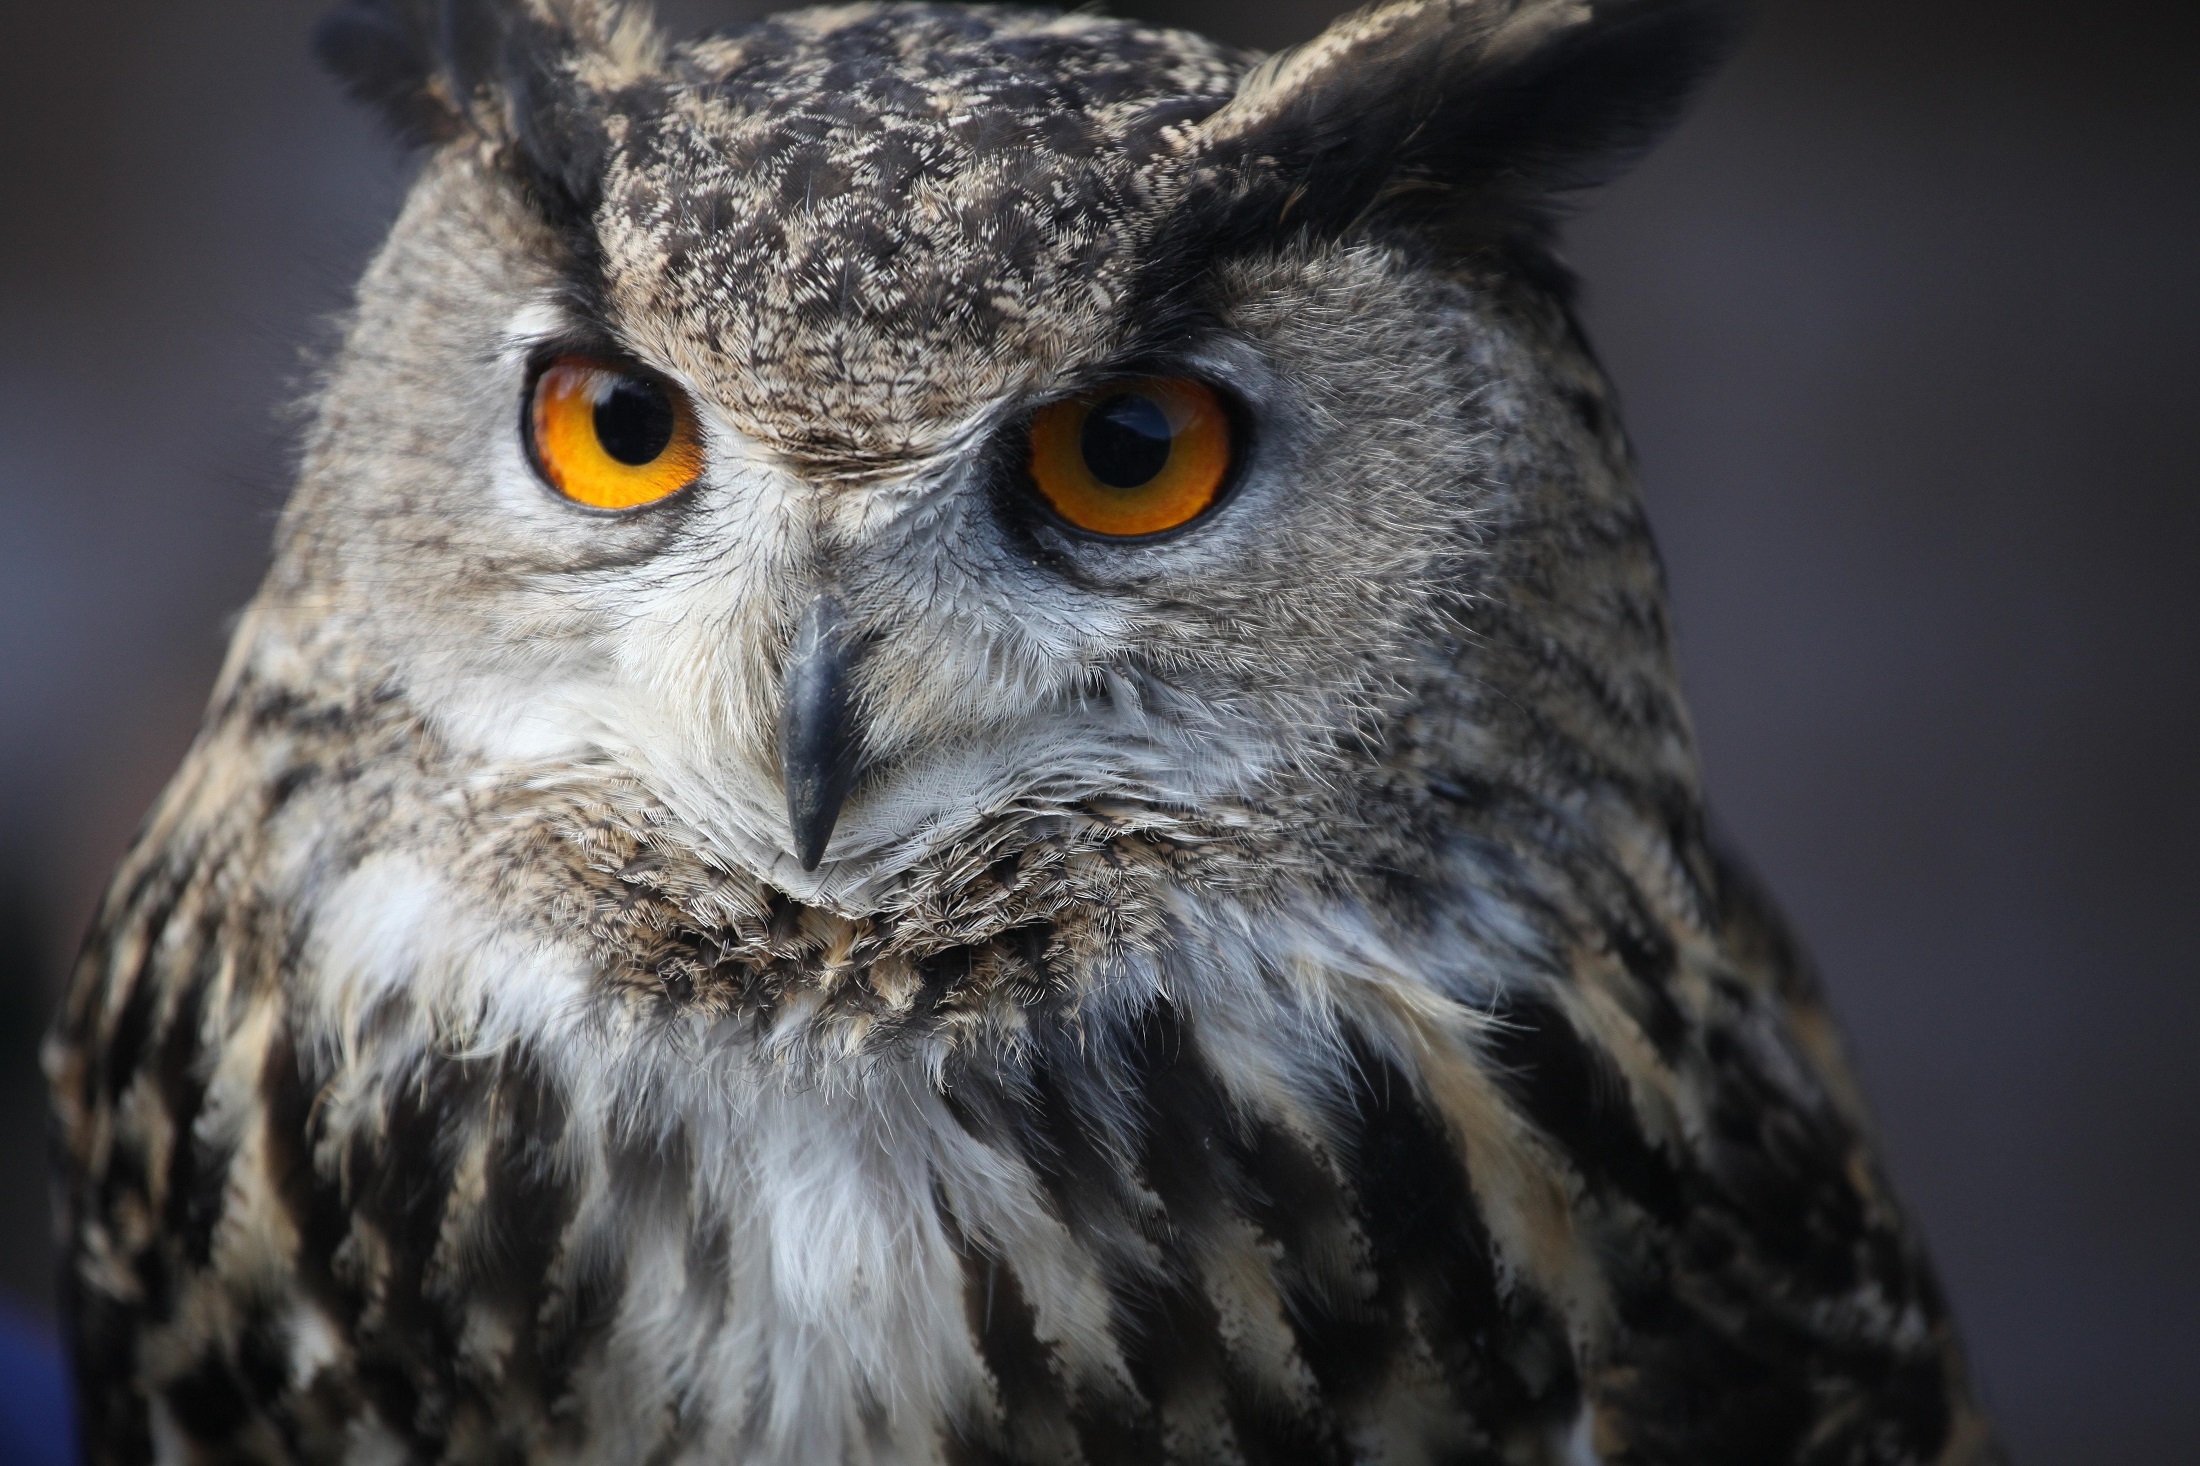 Eagle owl photo